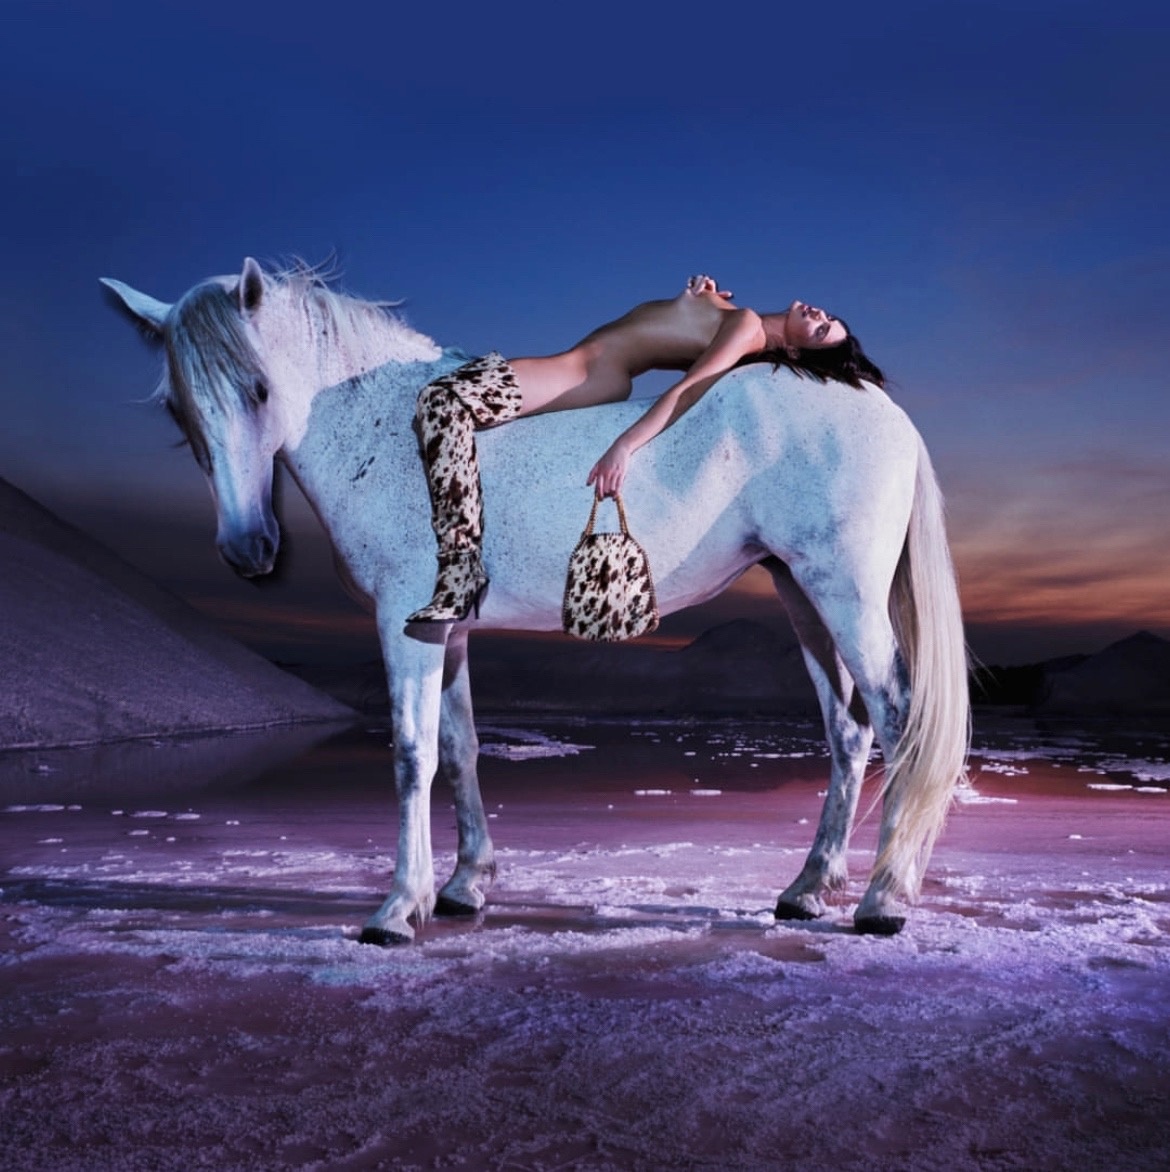 В сети раскритиковали Кендал Дженнер, сфотографировавшуюся голой на лошади. ТОП горячих фото модели
